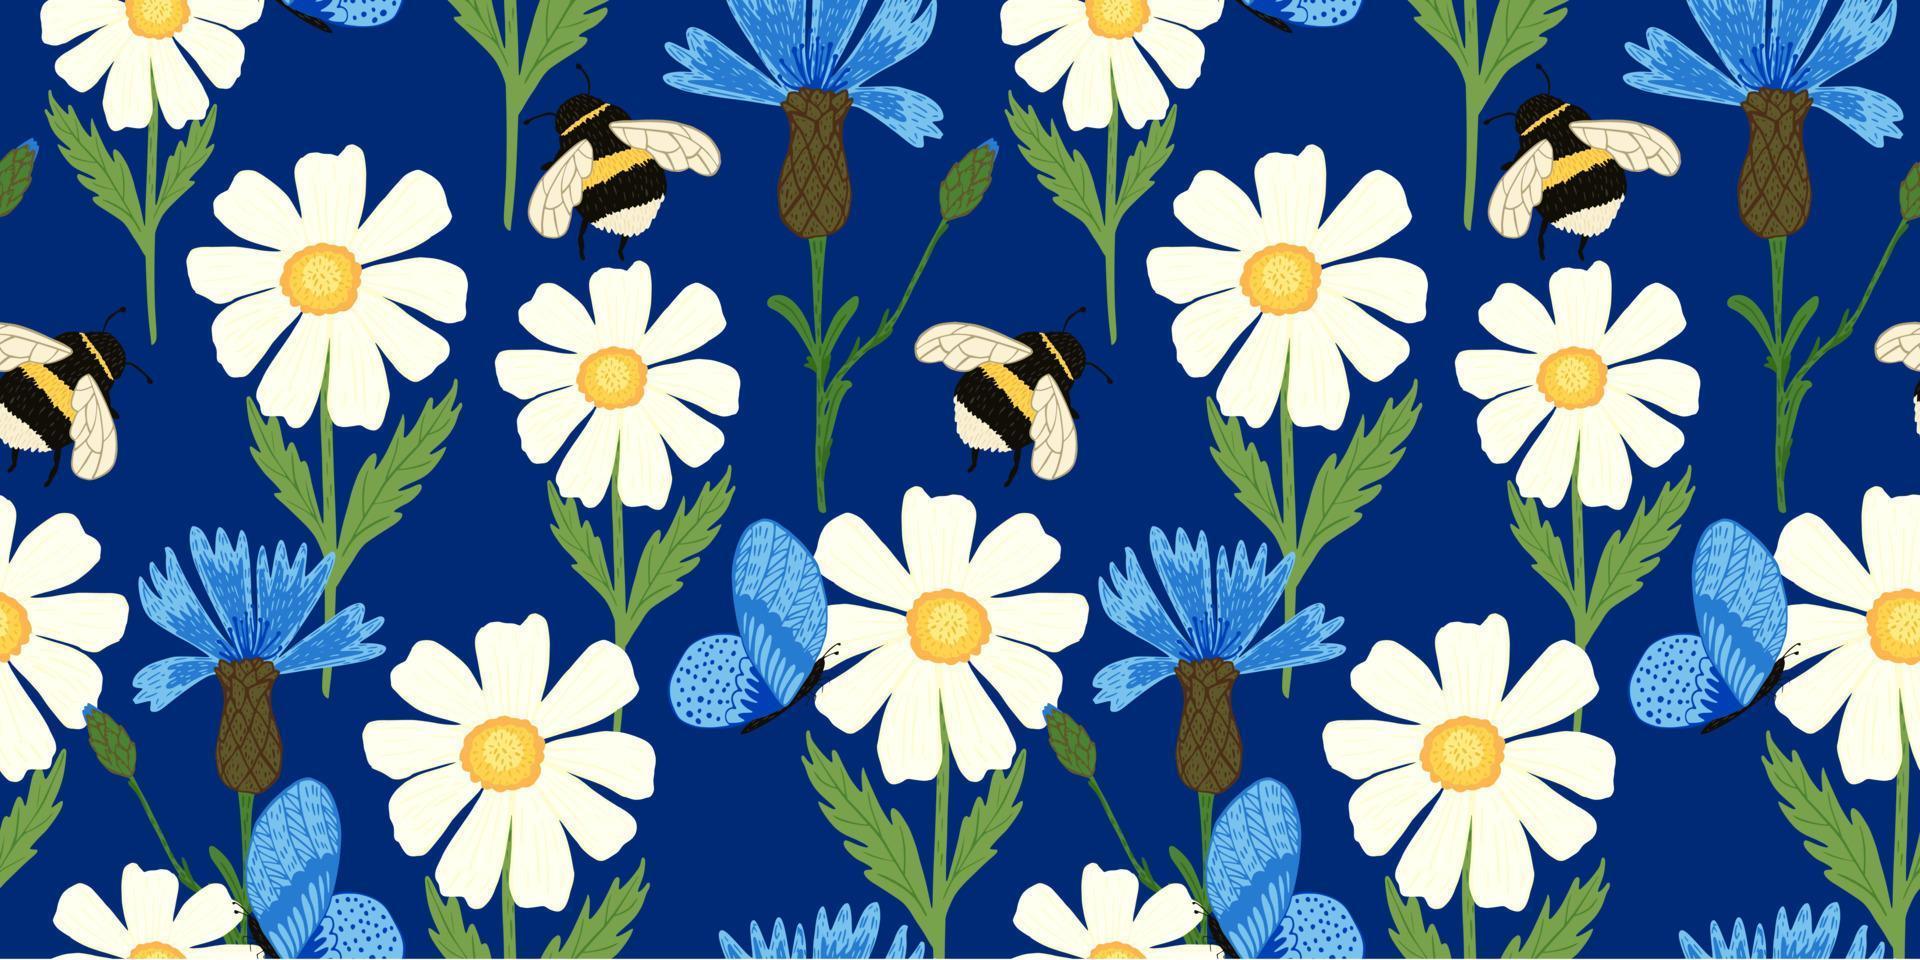 schattige bij op weide naadloos patroon. zomerbloemen op blauwe achtergrond. vector